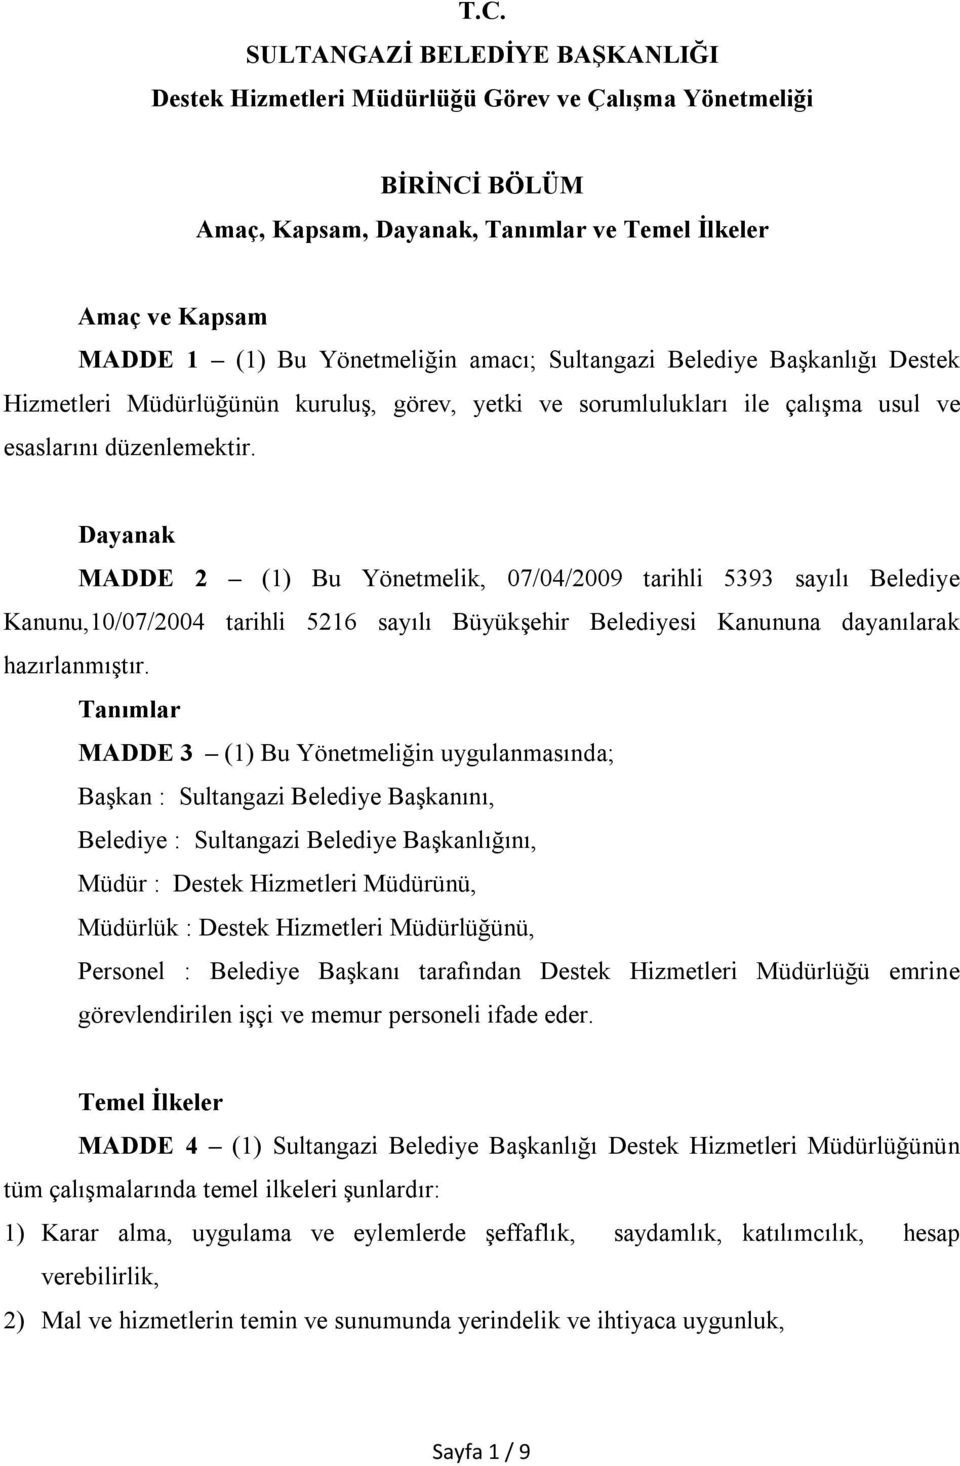 Dayanak MADDE 2 (1) Bu Yönetmelik, 07/04/2009 tarihli 5393 sayılı Belediye Kanunu,10/07/2004 tarihli 5216 sayılı Büyükşehir Belediyesi Kanununa dayanılarak hazırlanmıştır.